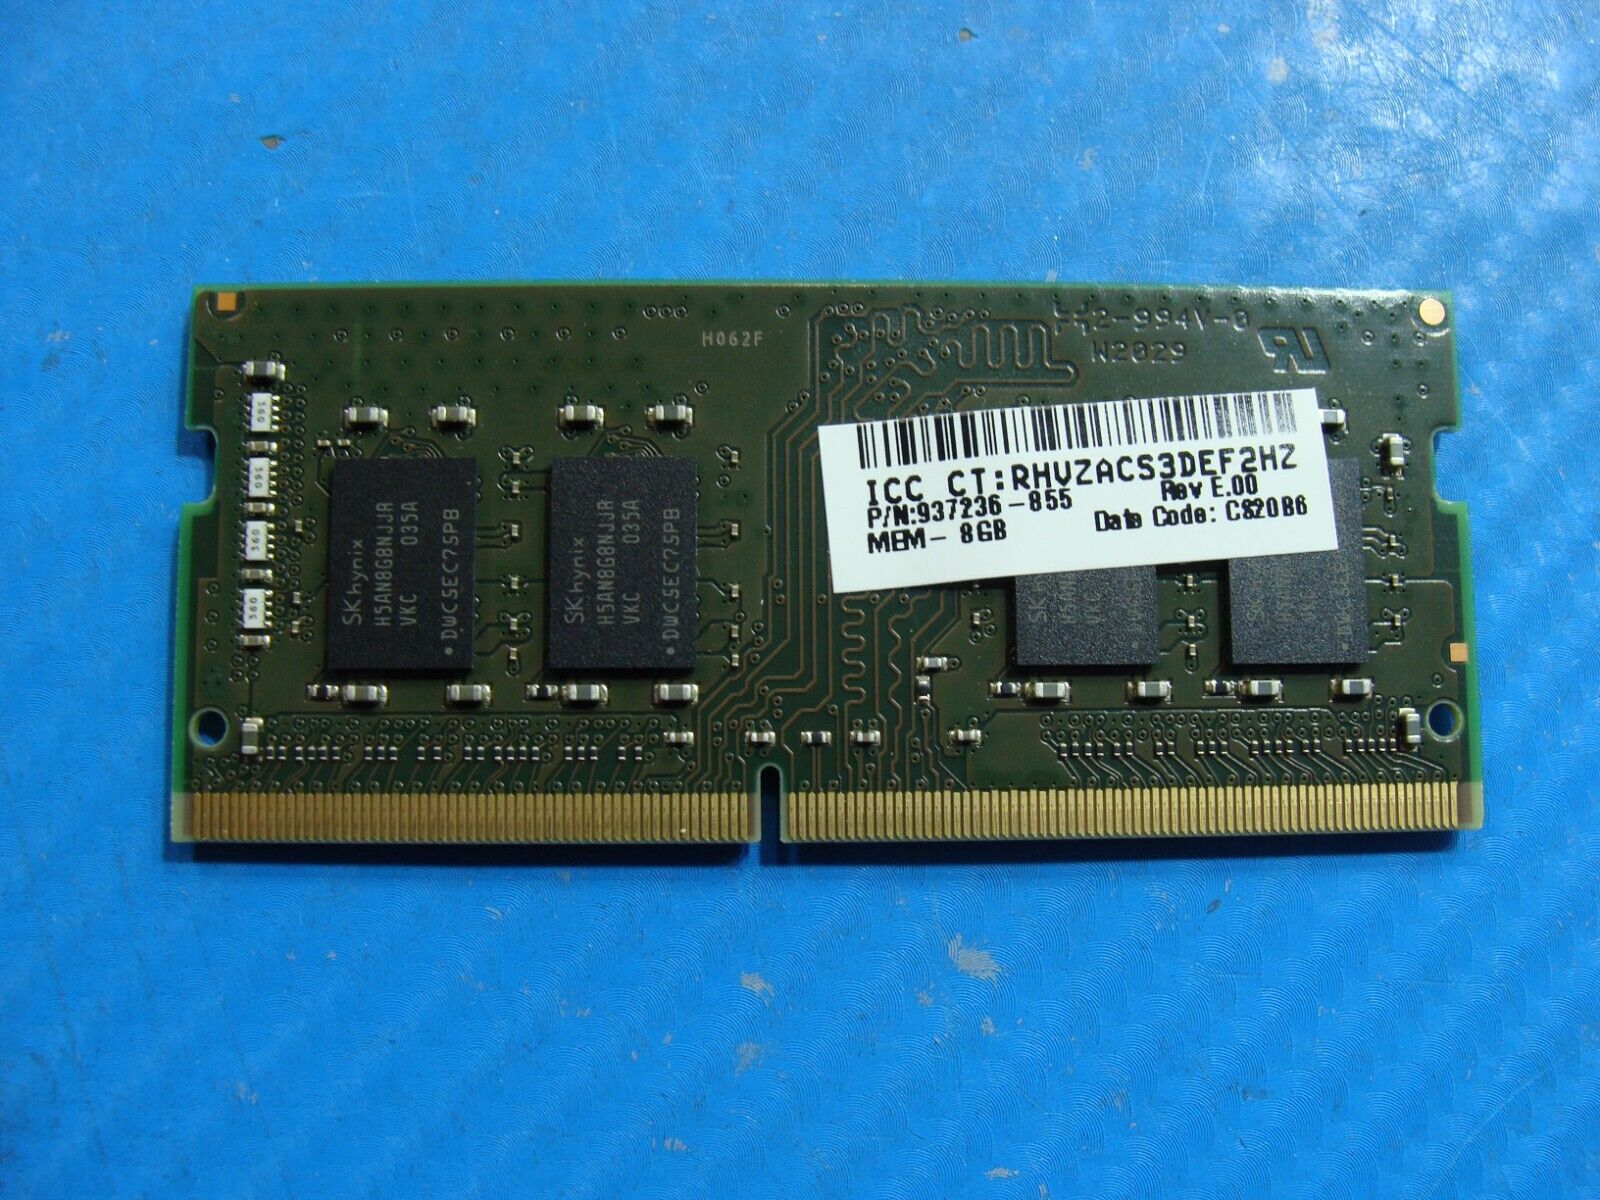 HP 17z-ca200 Kingston 8GB 1Rx8 PC4-2666V SO-DIMM Memory RAM HP26D4S9S8HJ-8